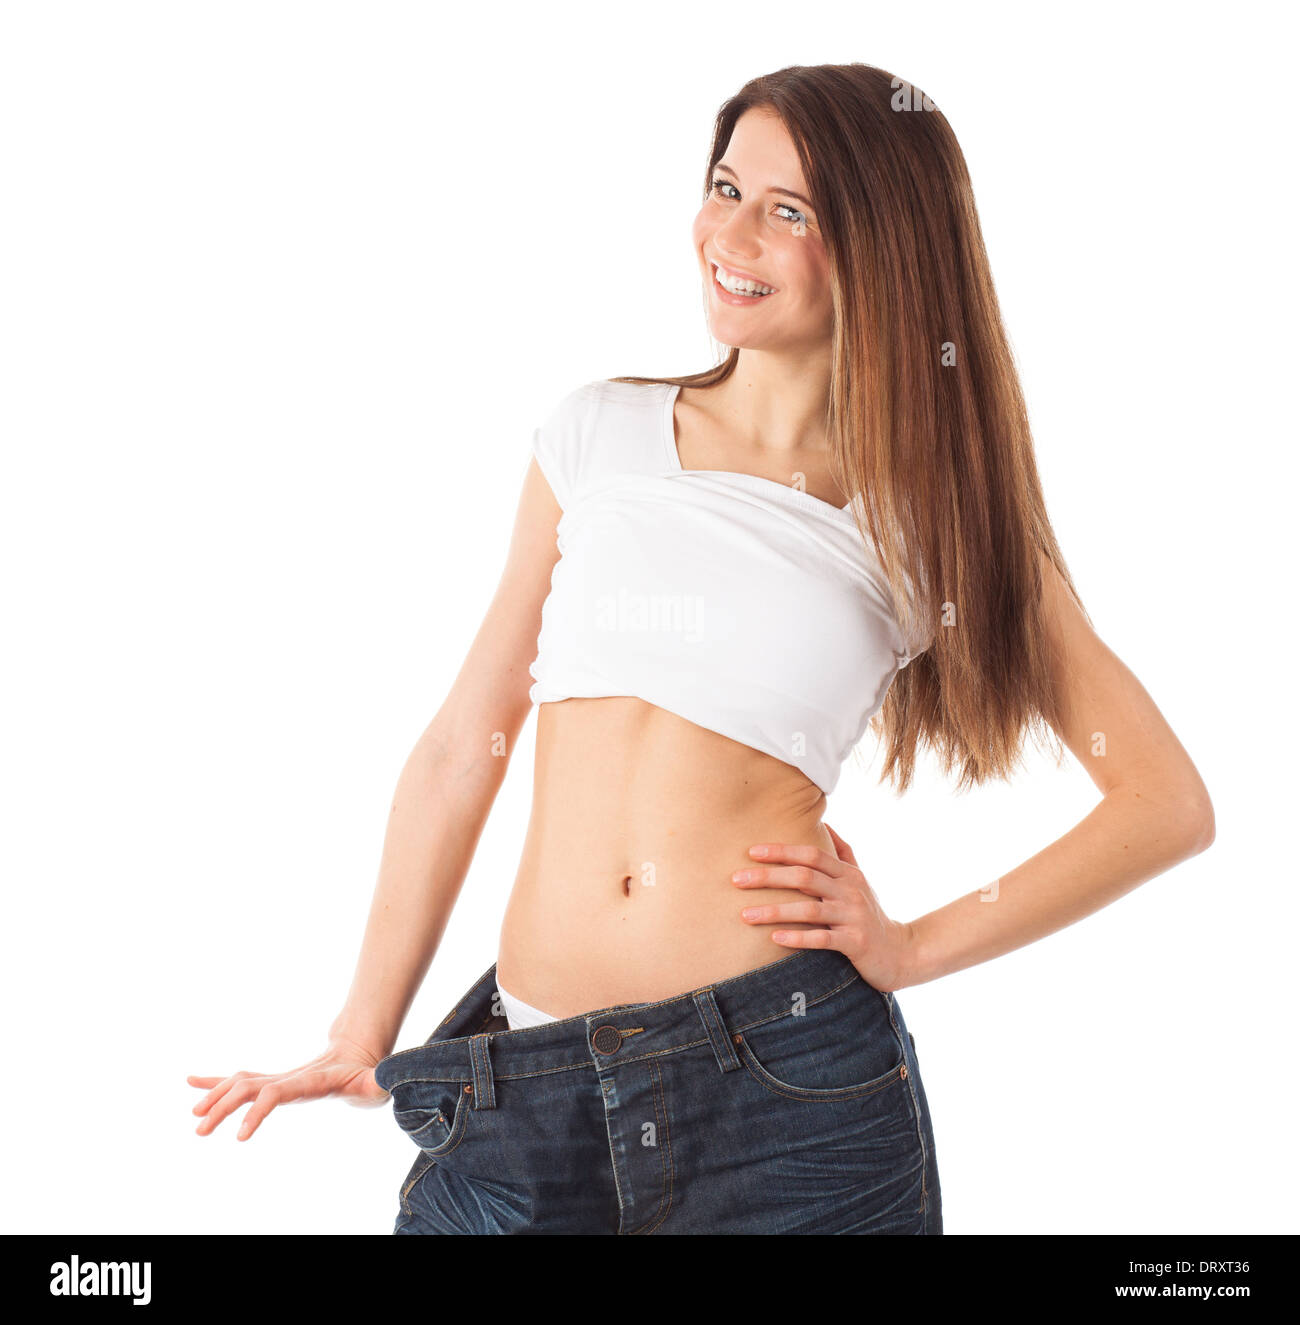 Allegro giovane donna che mostra la sua vita indossando un vecchio jeans, isolato su bianco Foto Stock